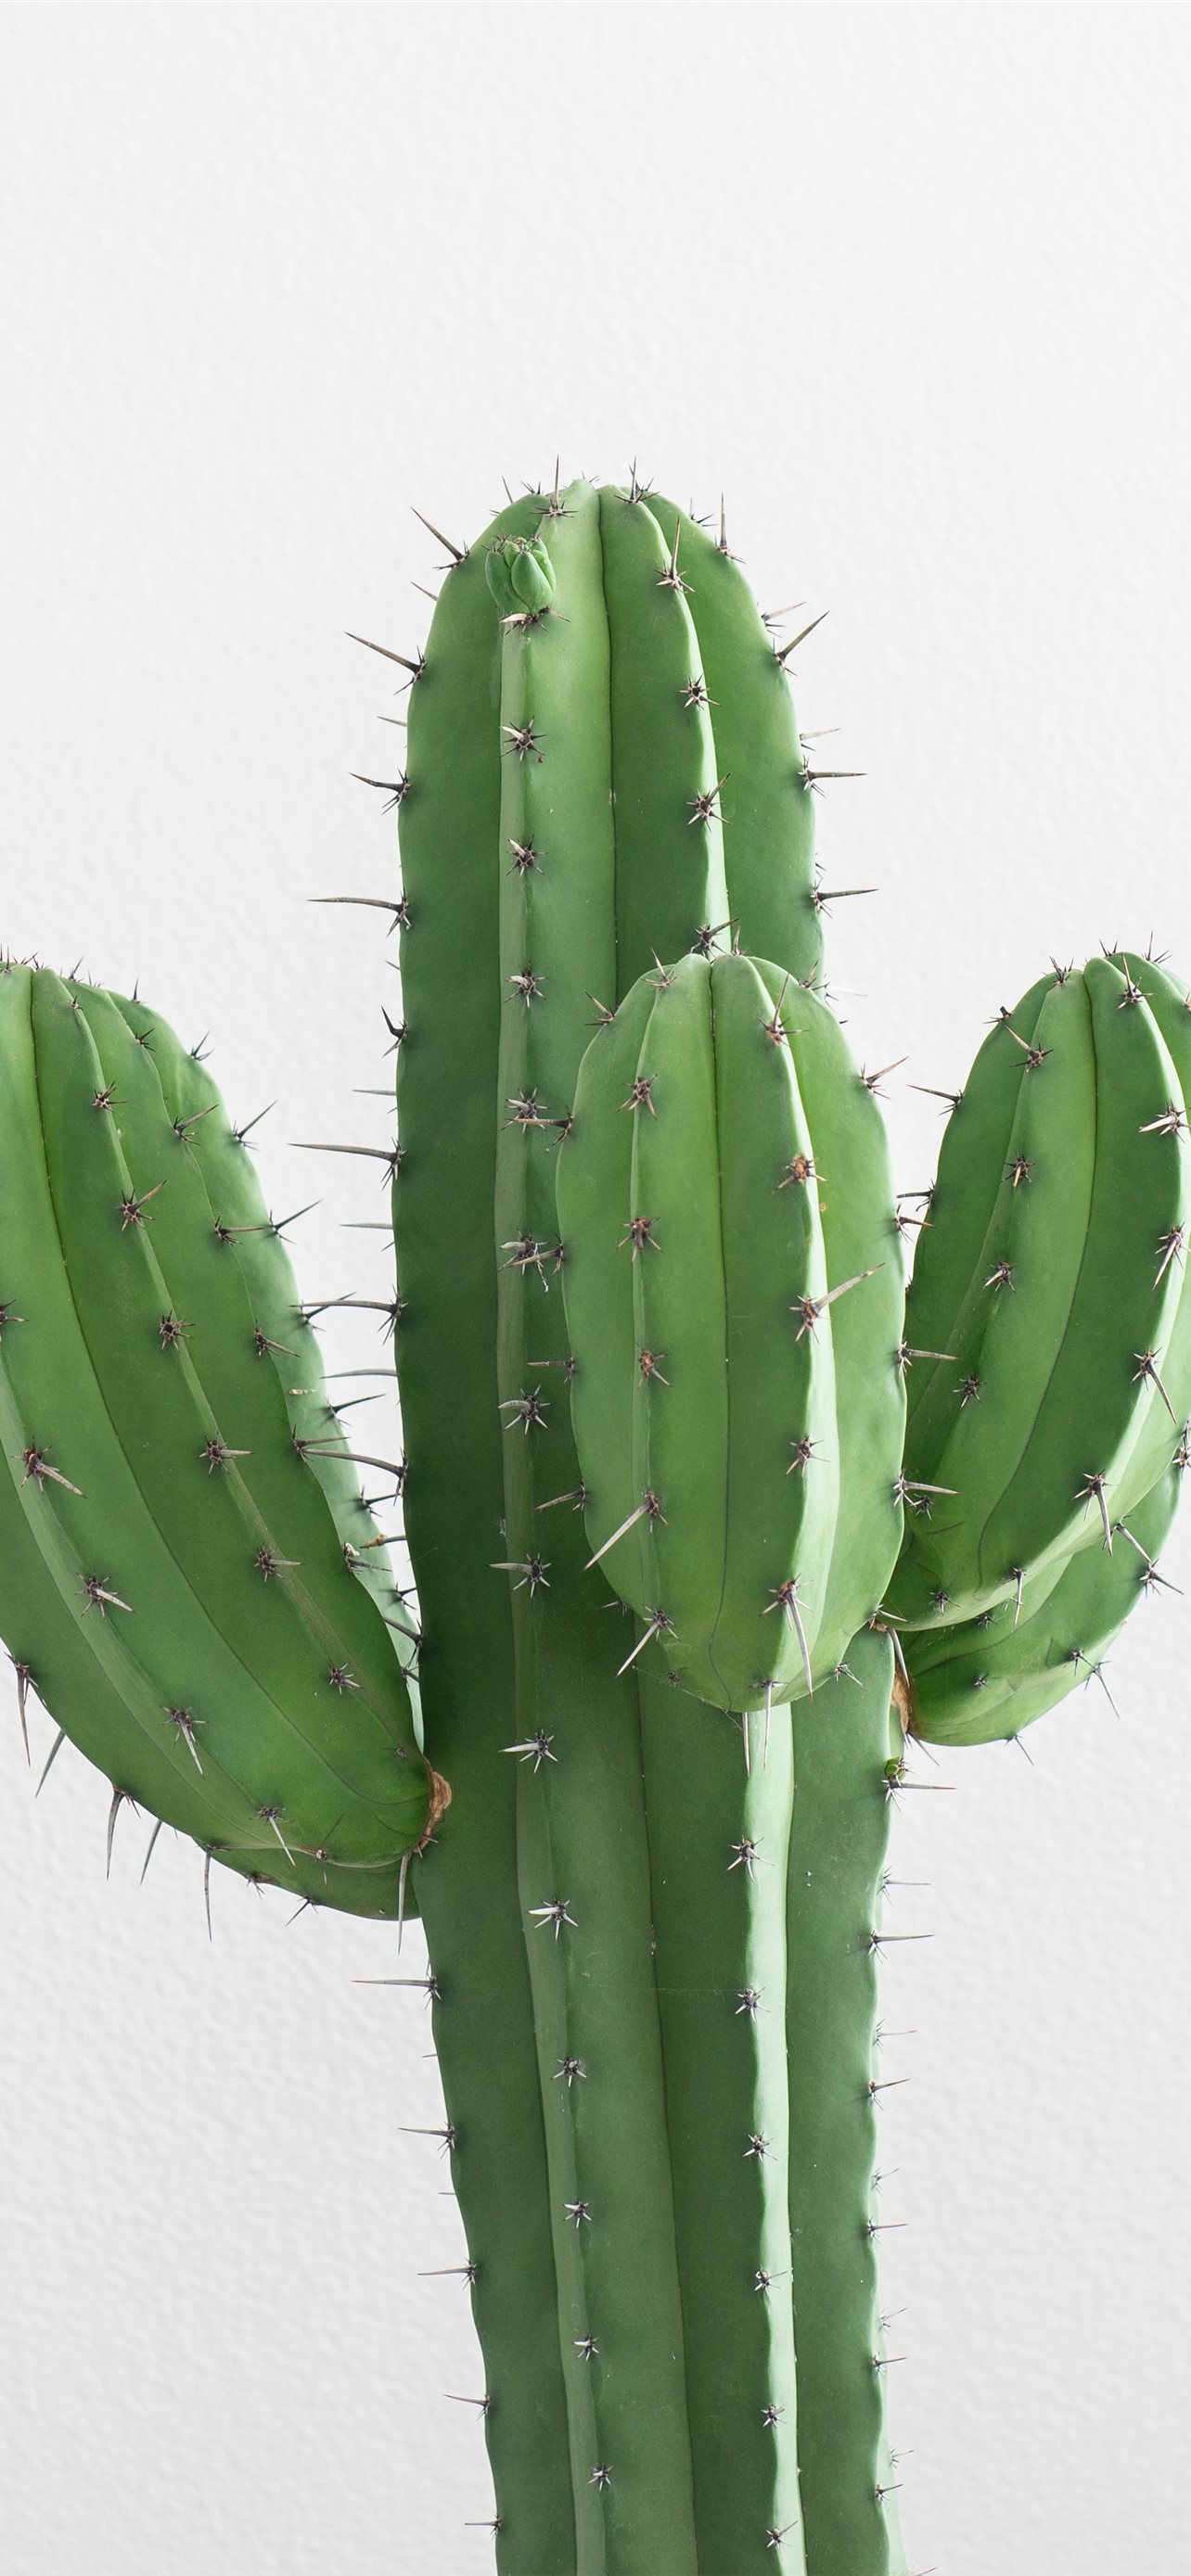 cactus plant iPhone wallpaper 